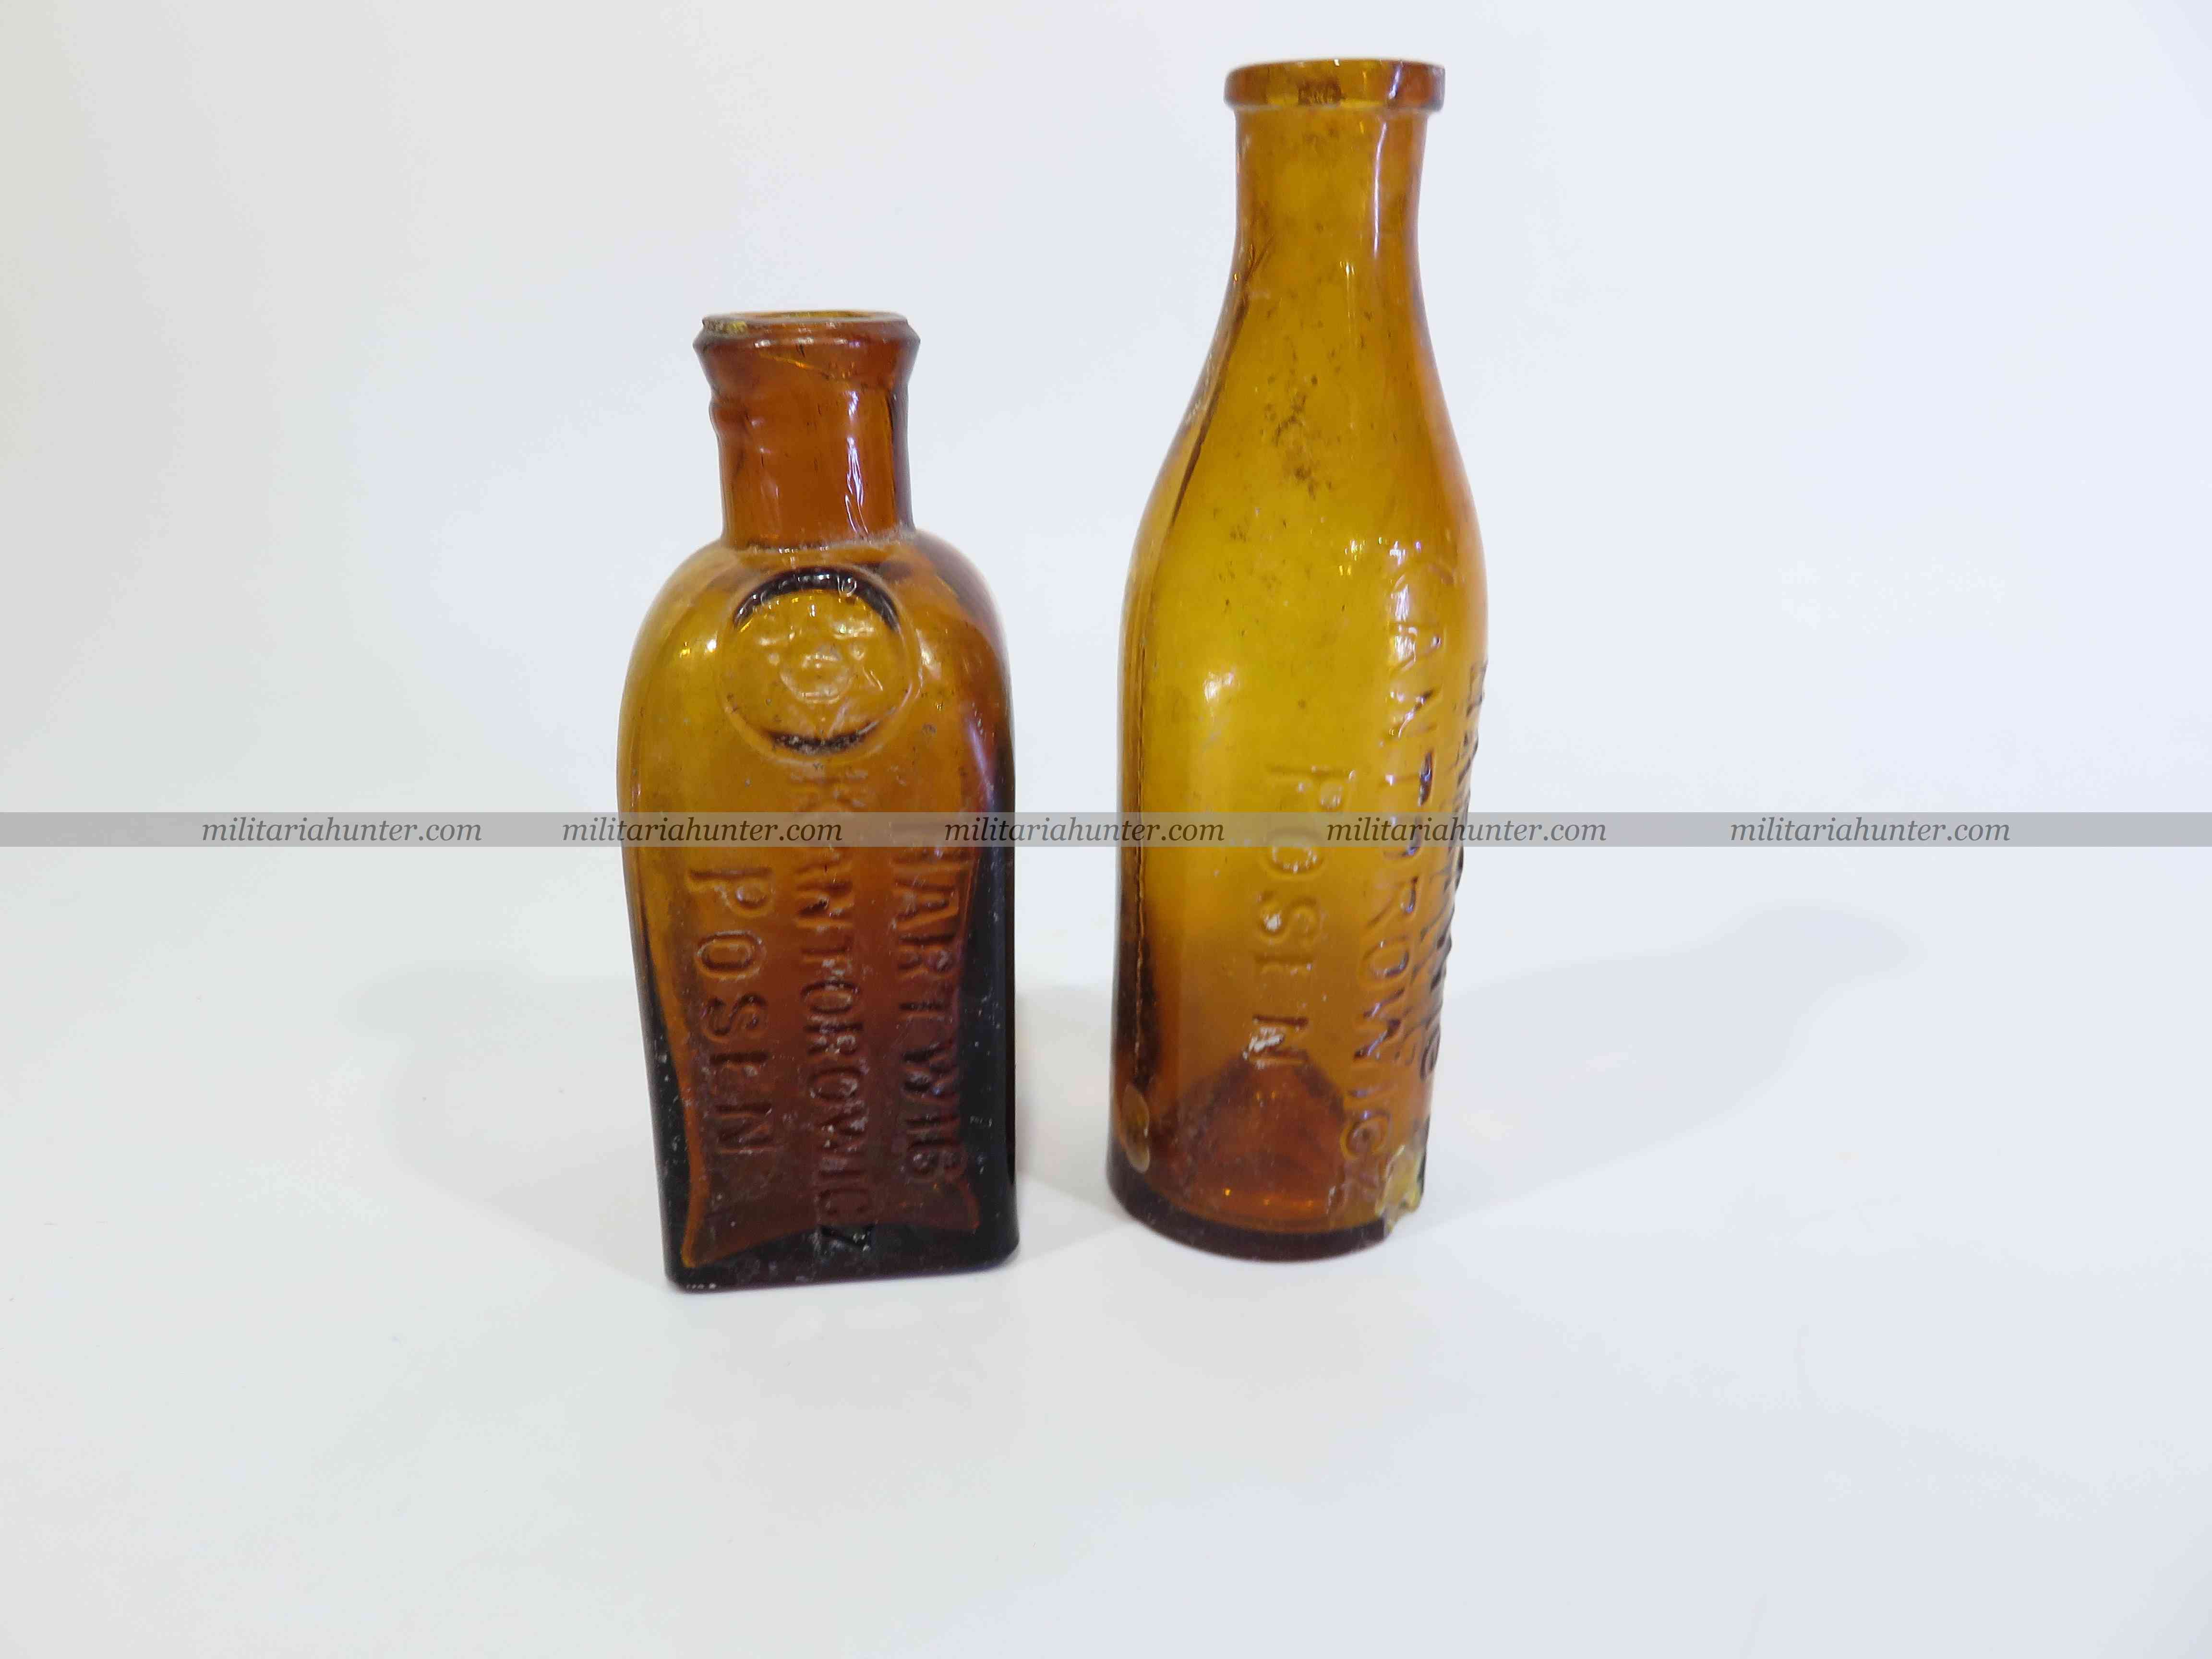 militaria : 2 petites bouteilles Kantorowicz - ww1 german small Kantorowicz bottles